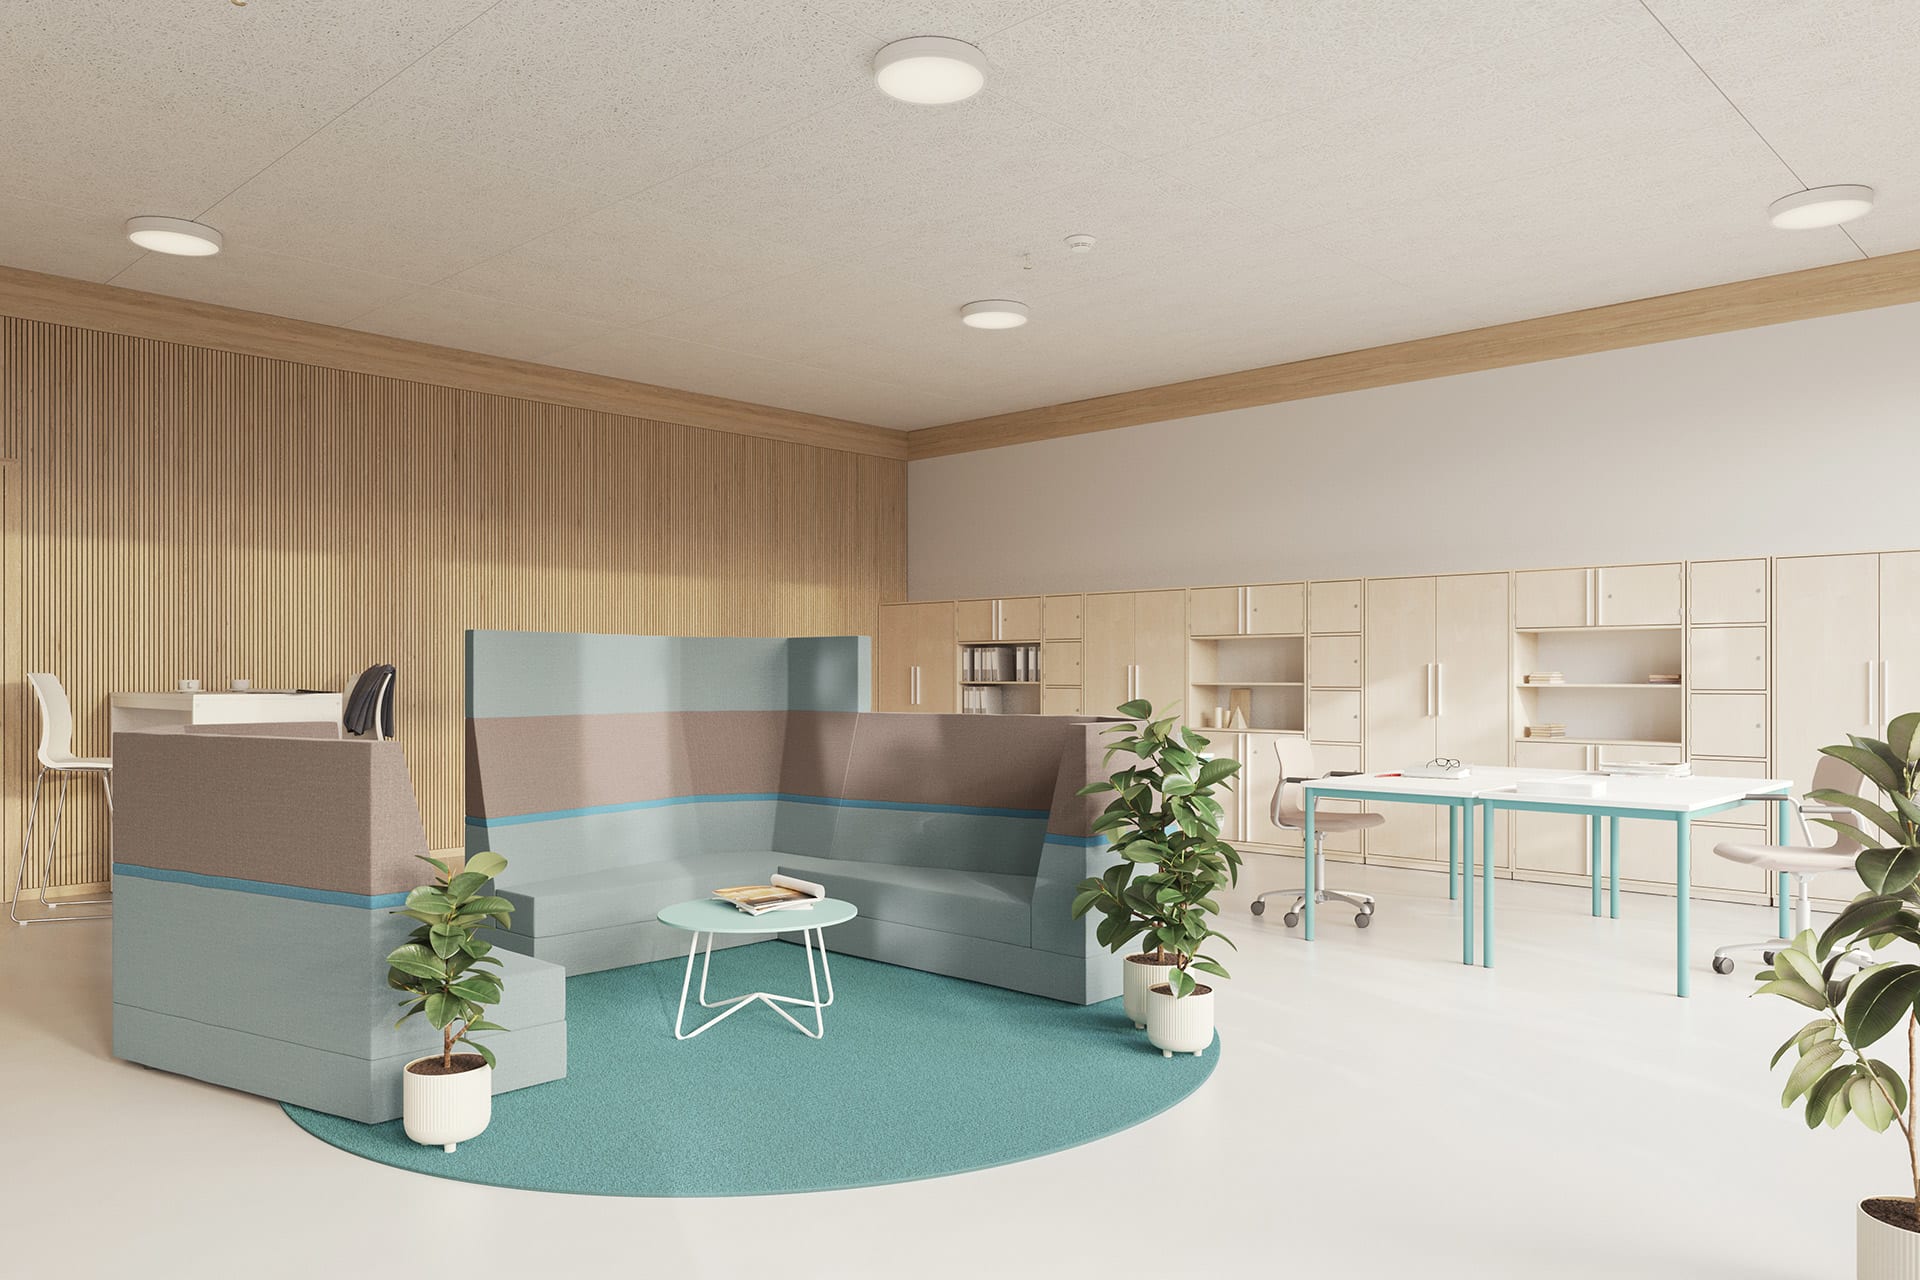 Farbgestaltung von Räumen | Raum mit drei Besprechungssofas in Grau und Blau stehen auf einem runden blauen Teppich, daneben ein Tisch mit zwei Bürostühlen und Wandregale